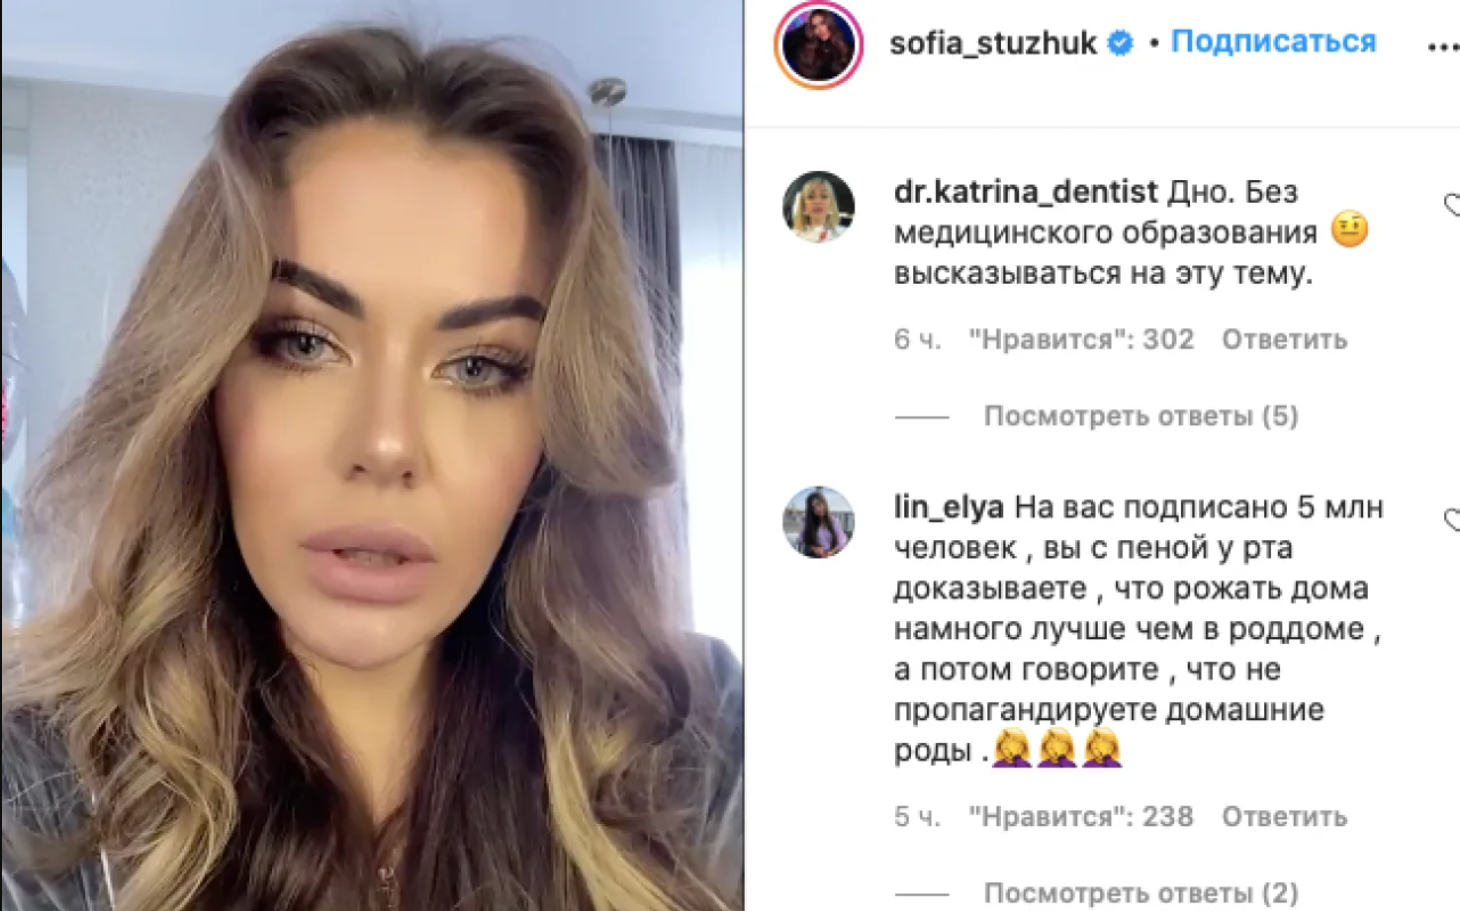 Софию Стужук обвинили в пропаганде домашних родов